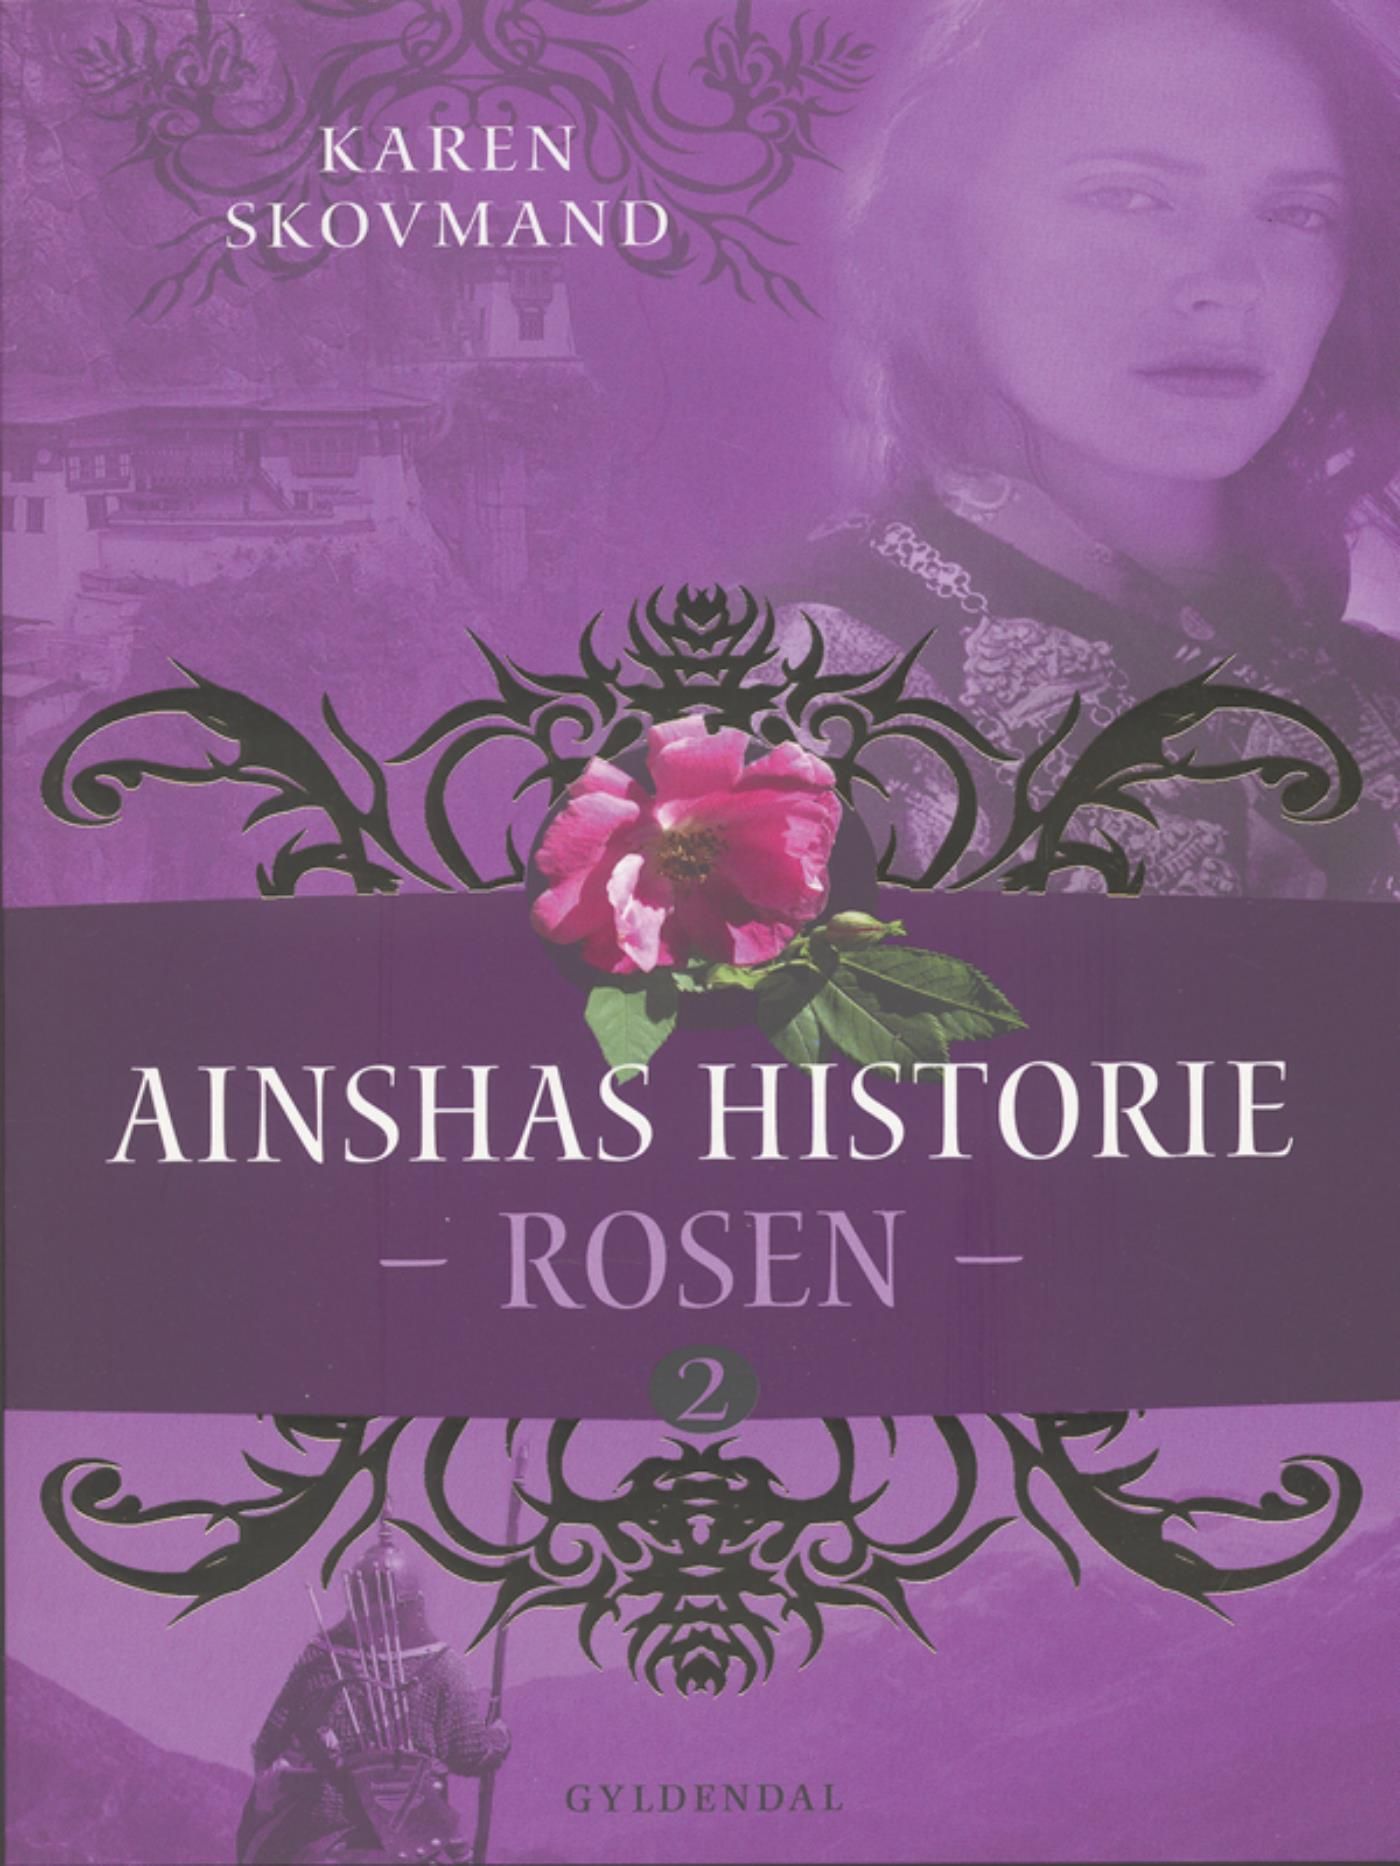 Ainshas historie 2 - Rosen, e-bog af Karen Skovmand Jensen